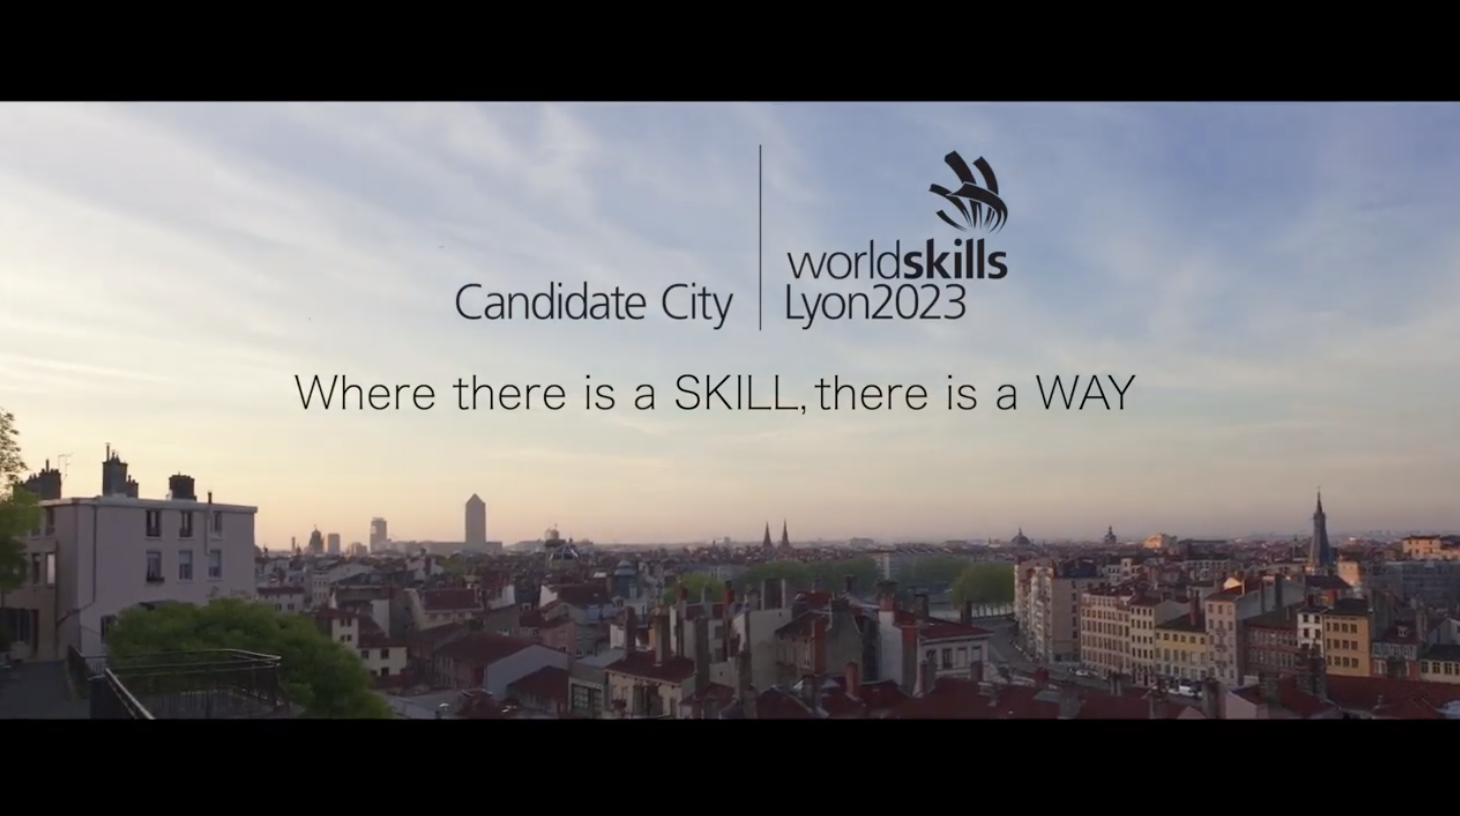 法國總統馬克宏：WorldSkills與法國職業教育與訓練政策「完全一致」